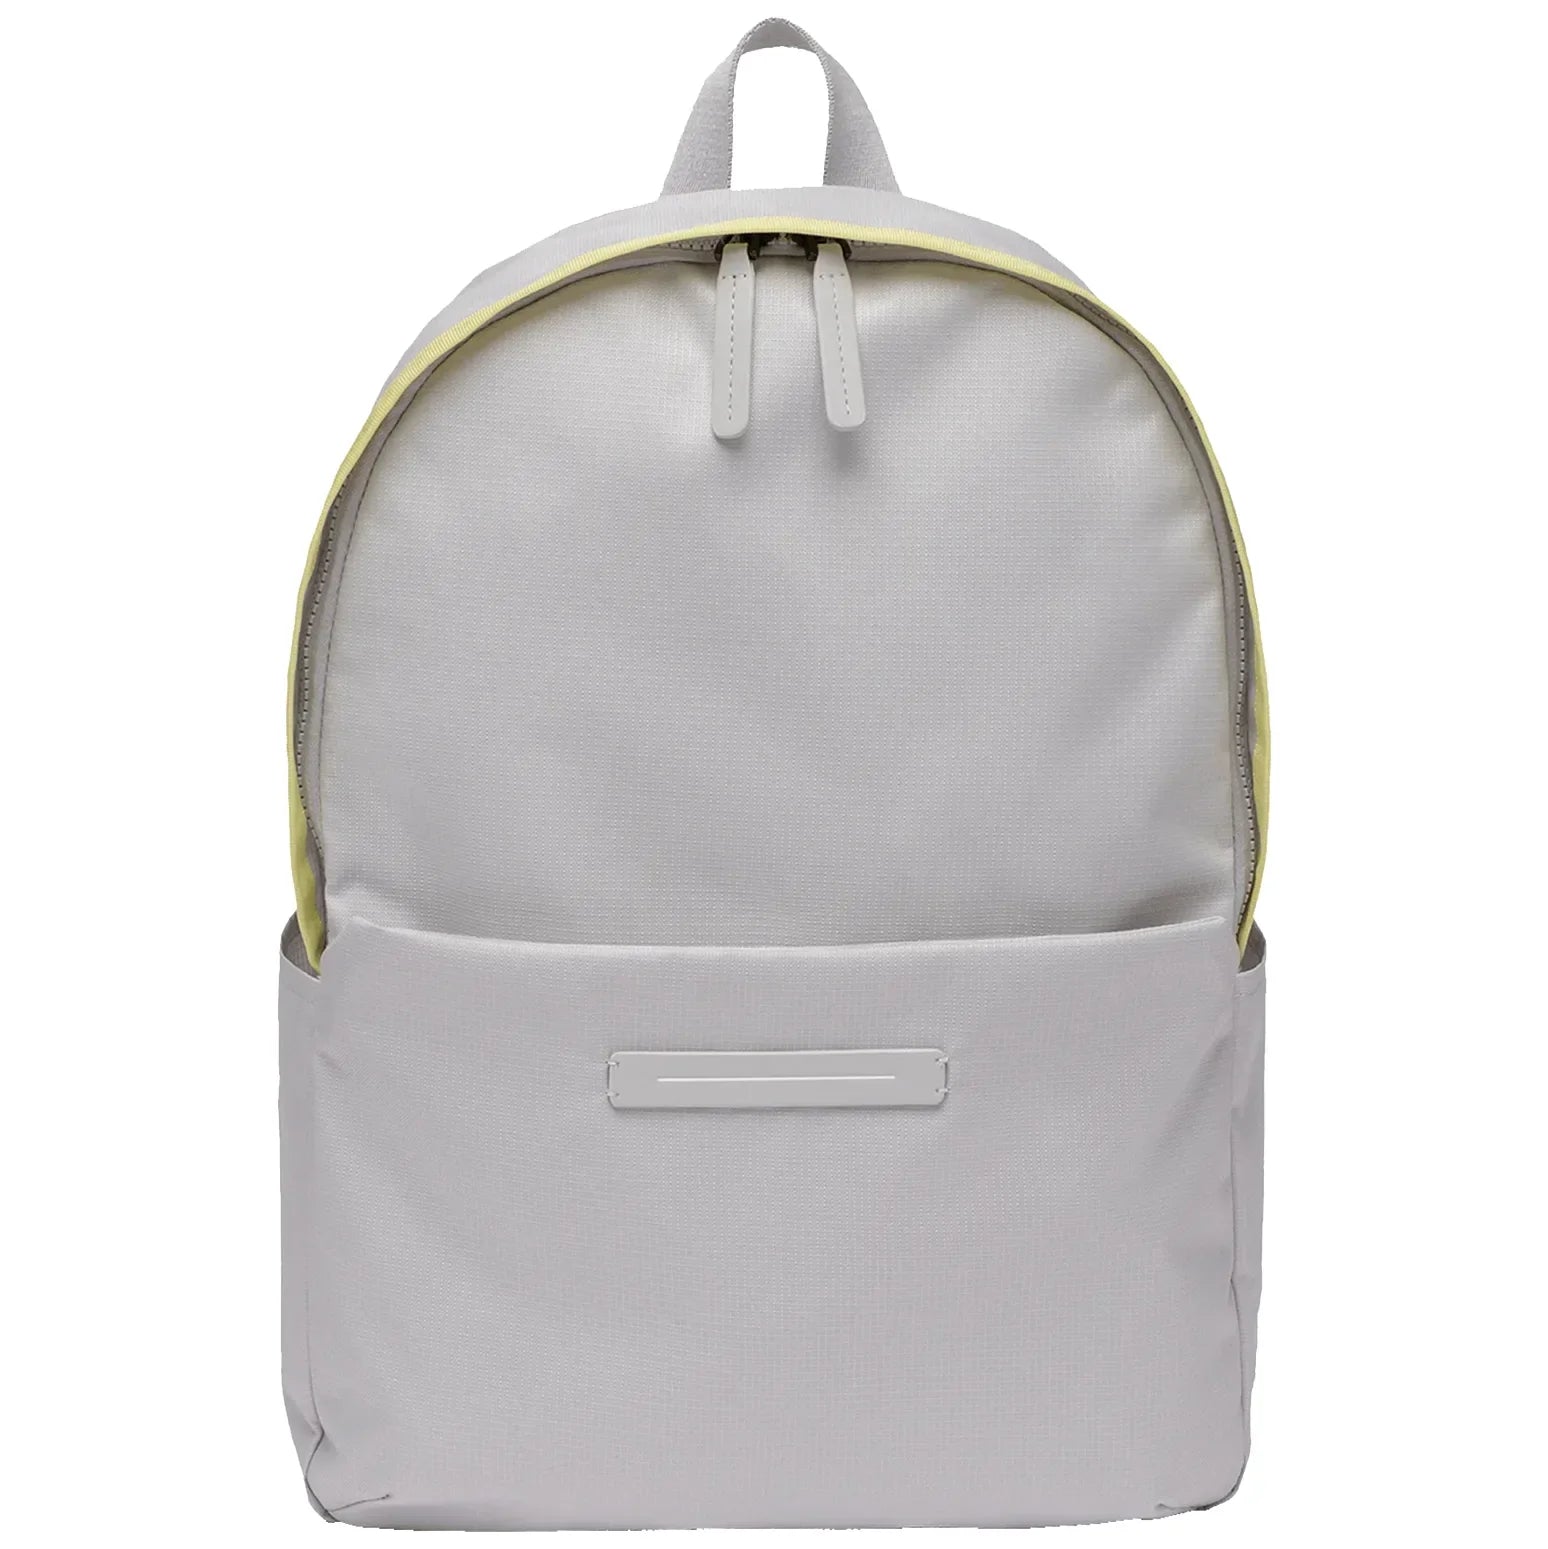 Horizn Studios Shibuya daypack backpack 44 cm - light quartz gray/glossy lemon